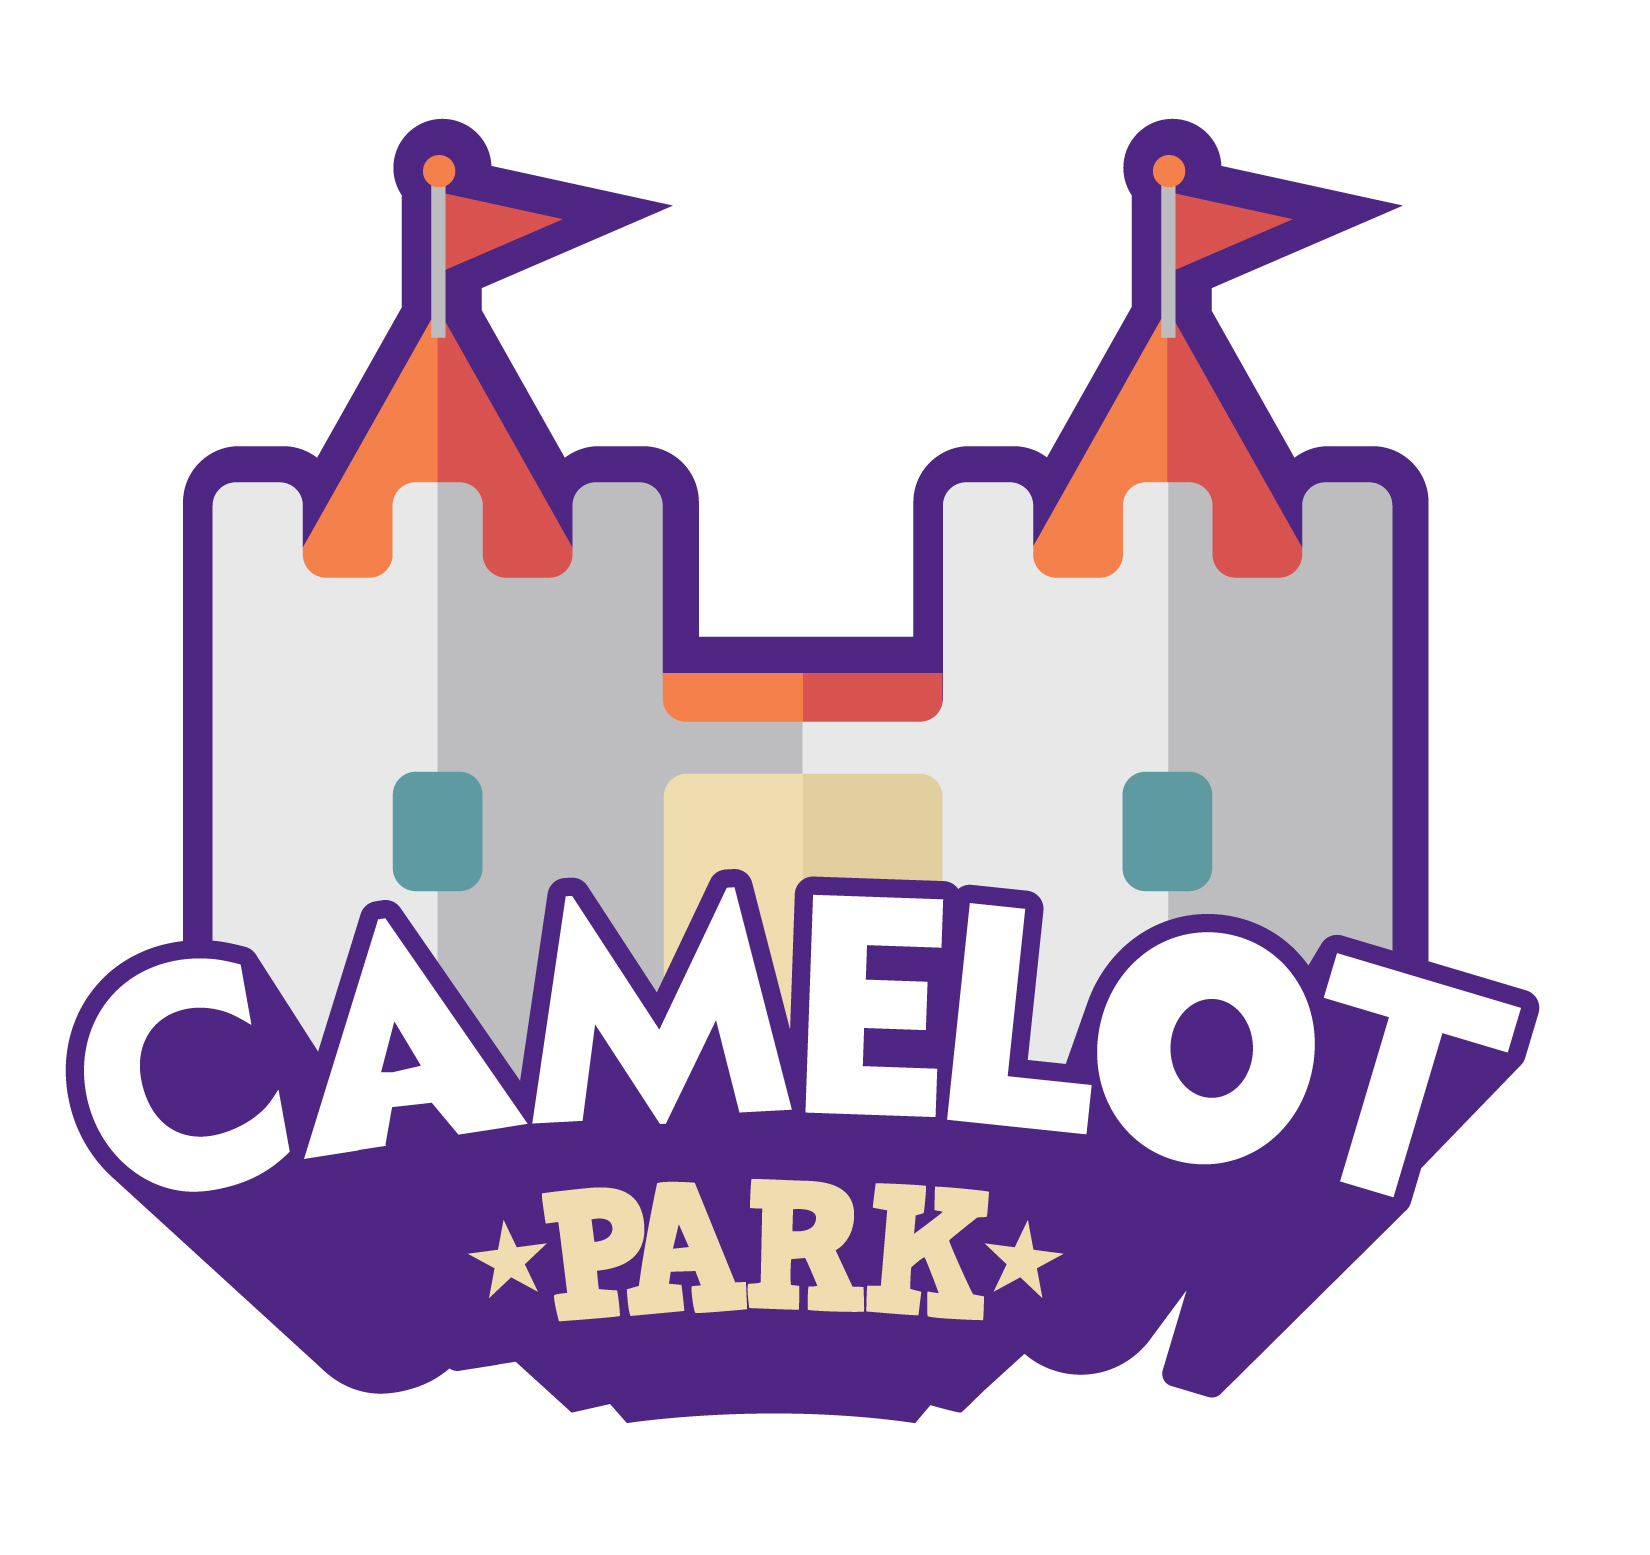 Camelot Park